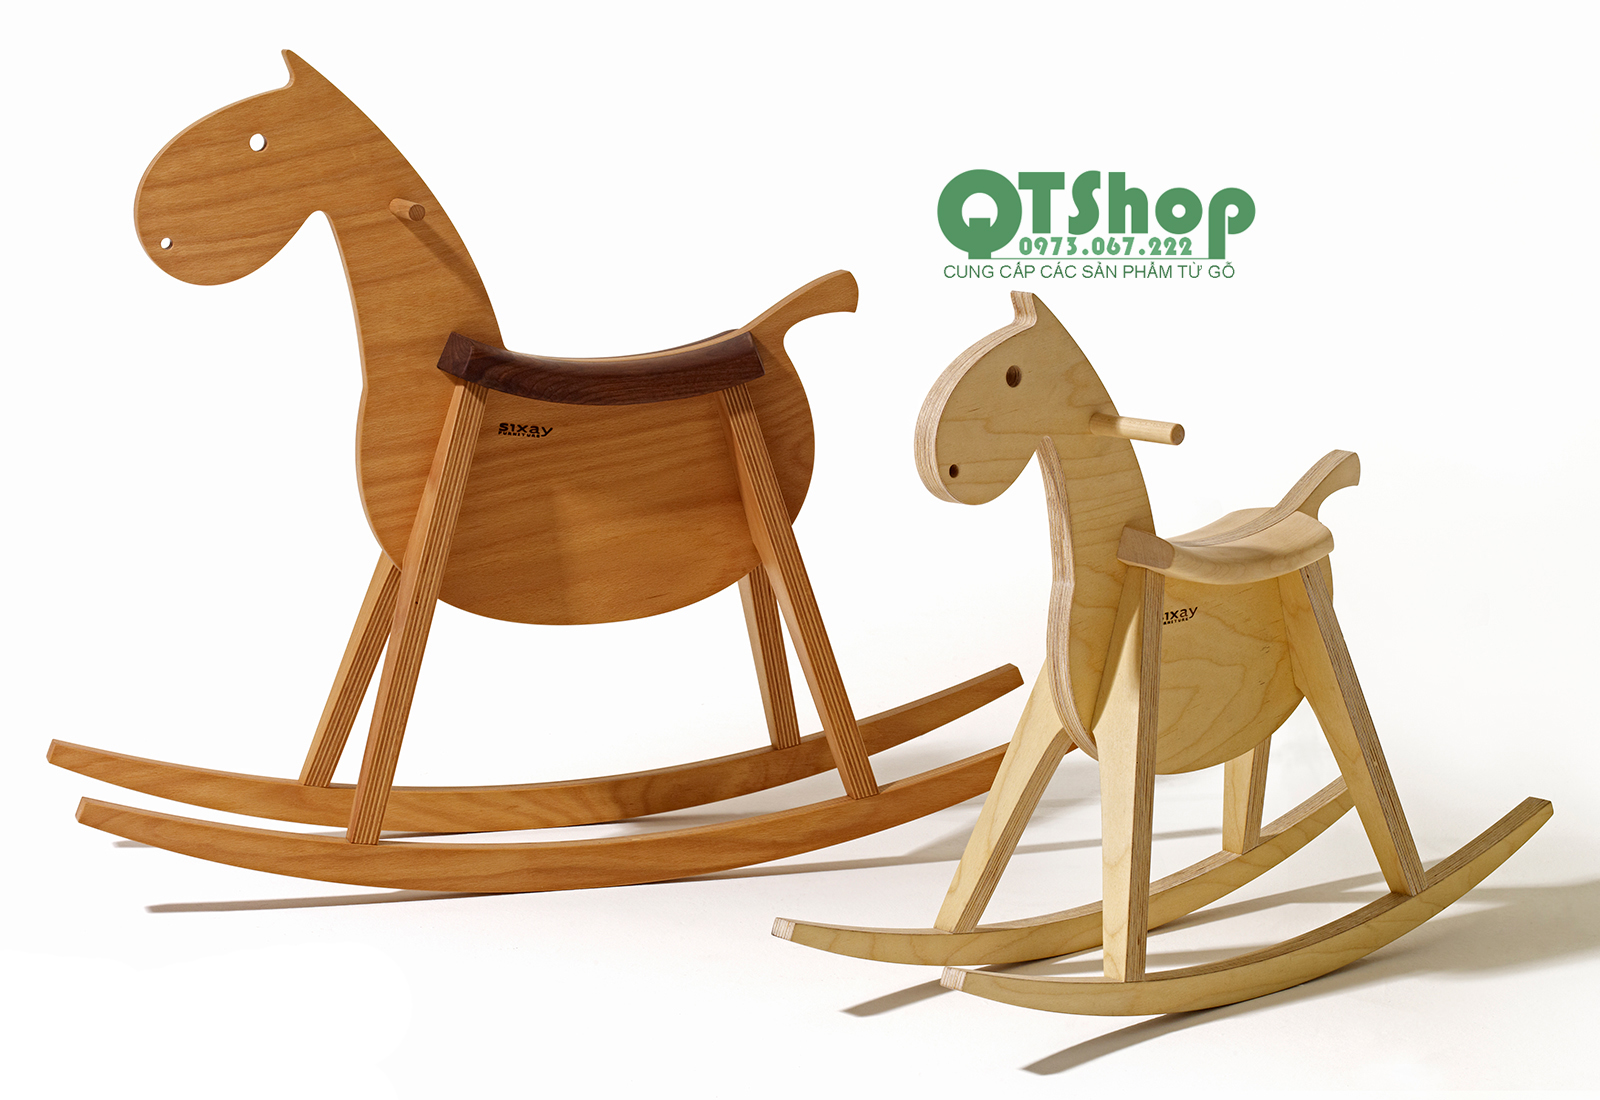 Ngựa gỗ bập bênh thiết kế độc -QTShop